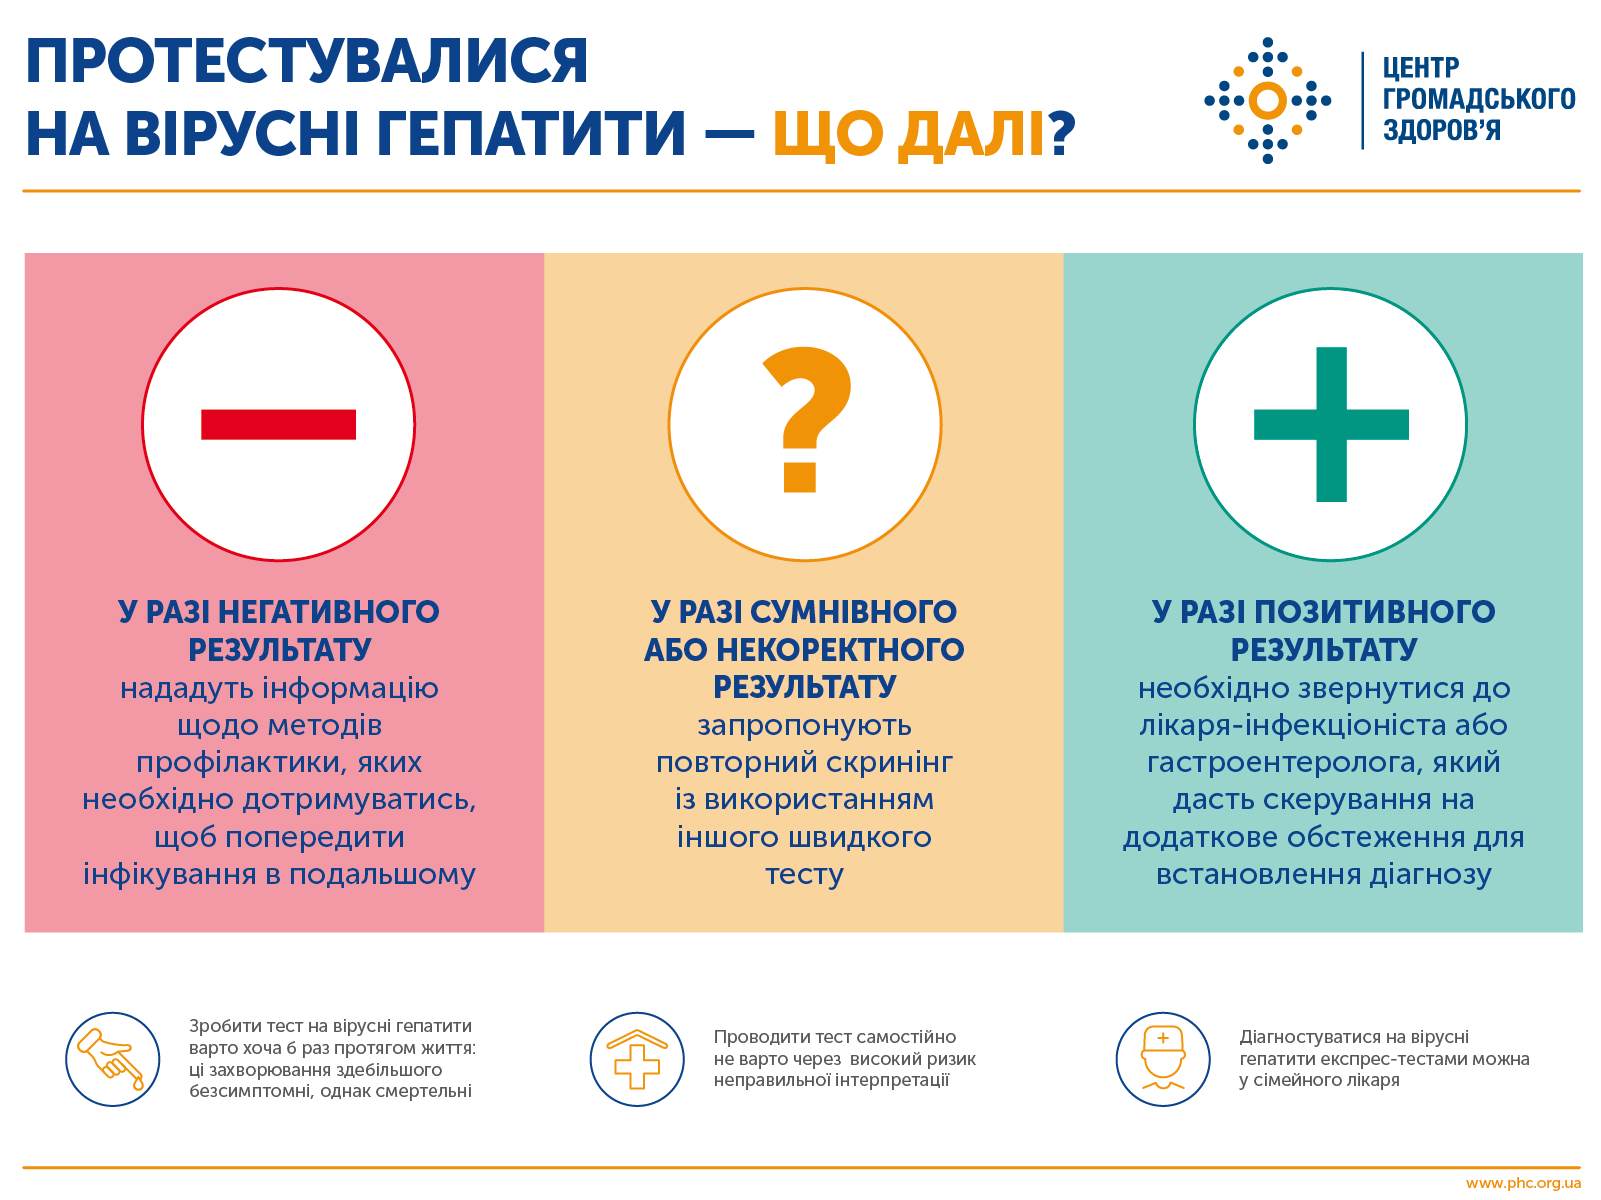 О гепатитах в Украине. Скриншот Facebook-страницы ЦОЗ